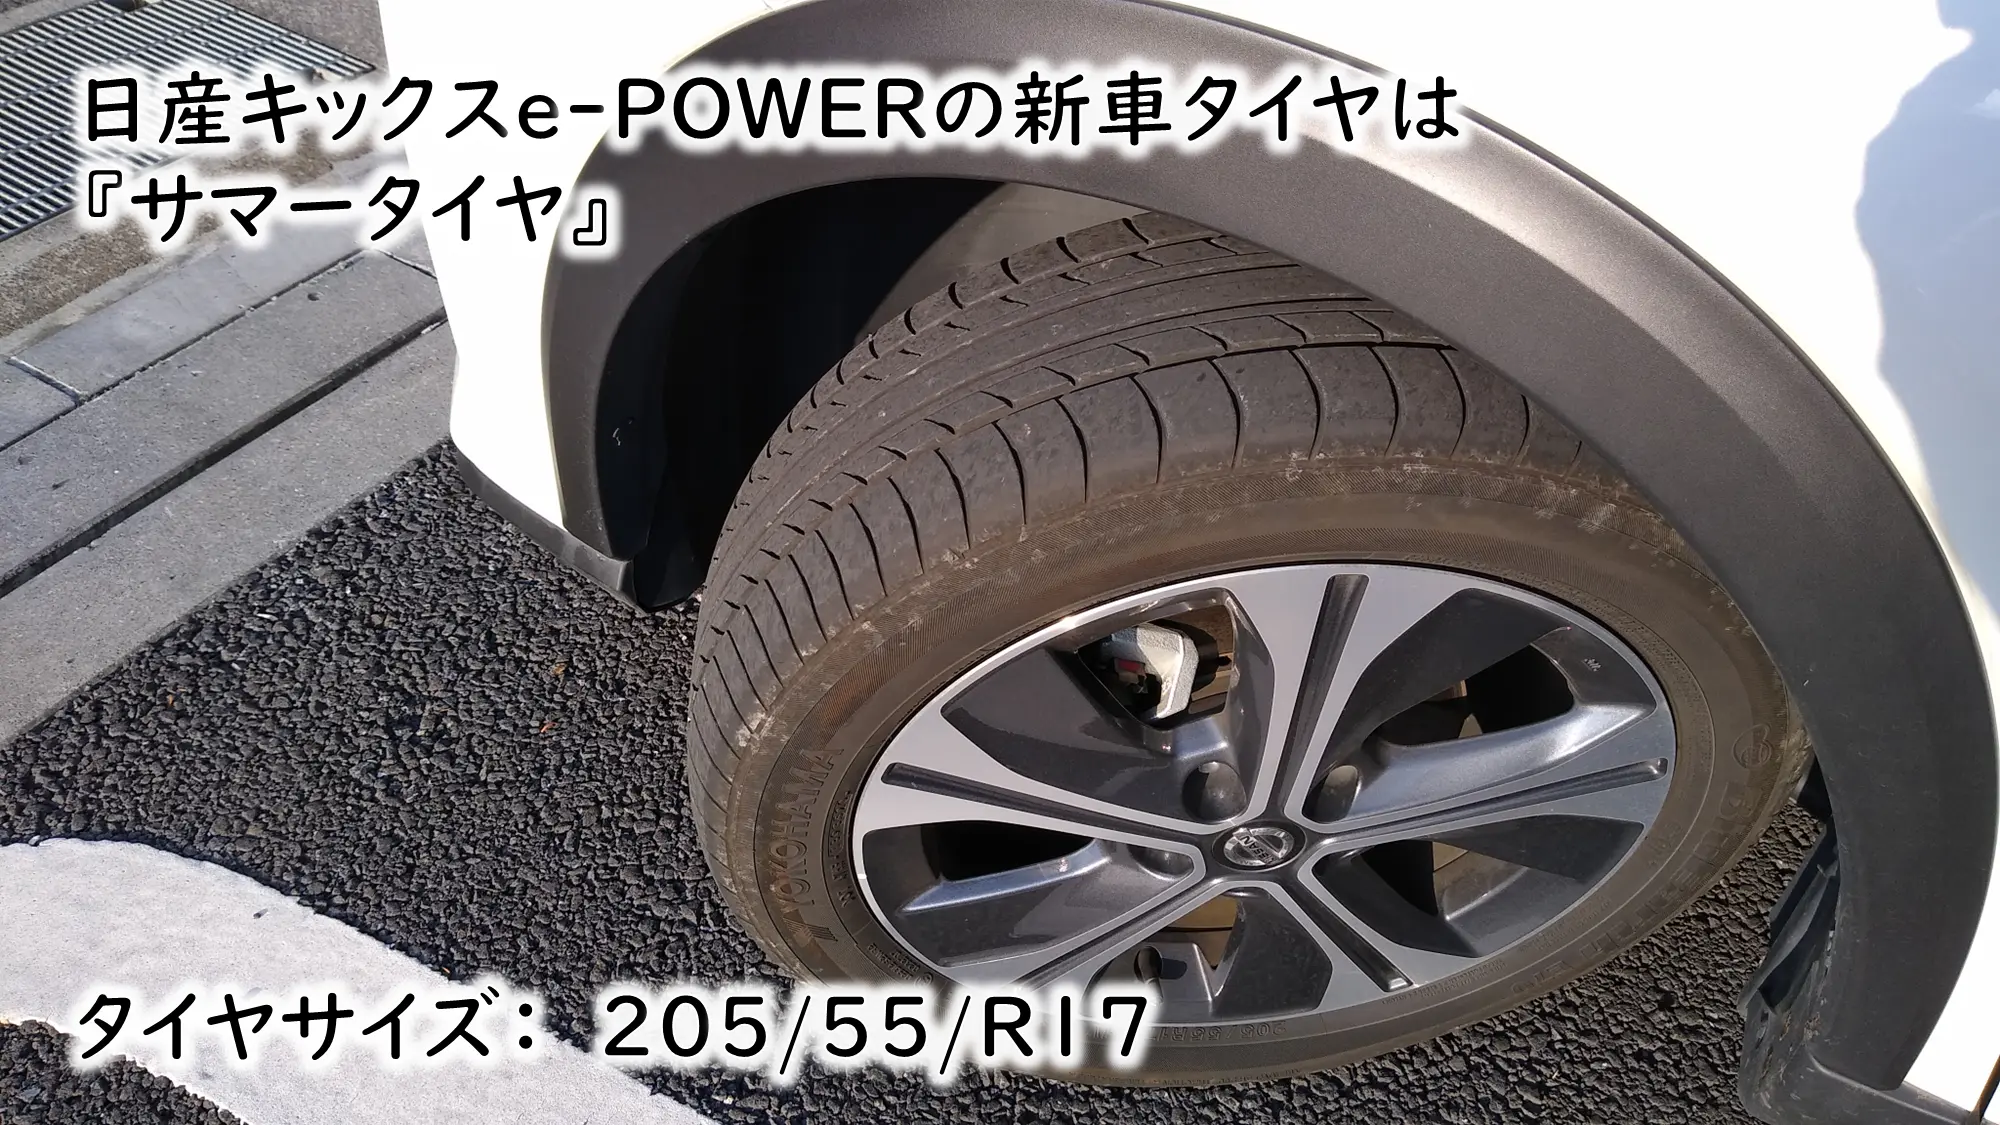 日産キックスe-POWERのタイヤサイズ